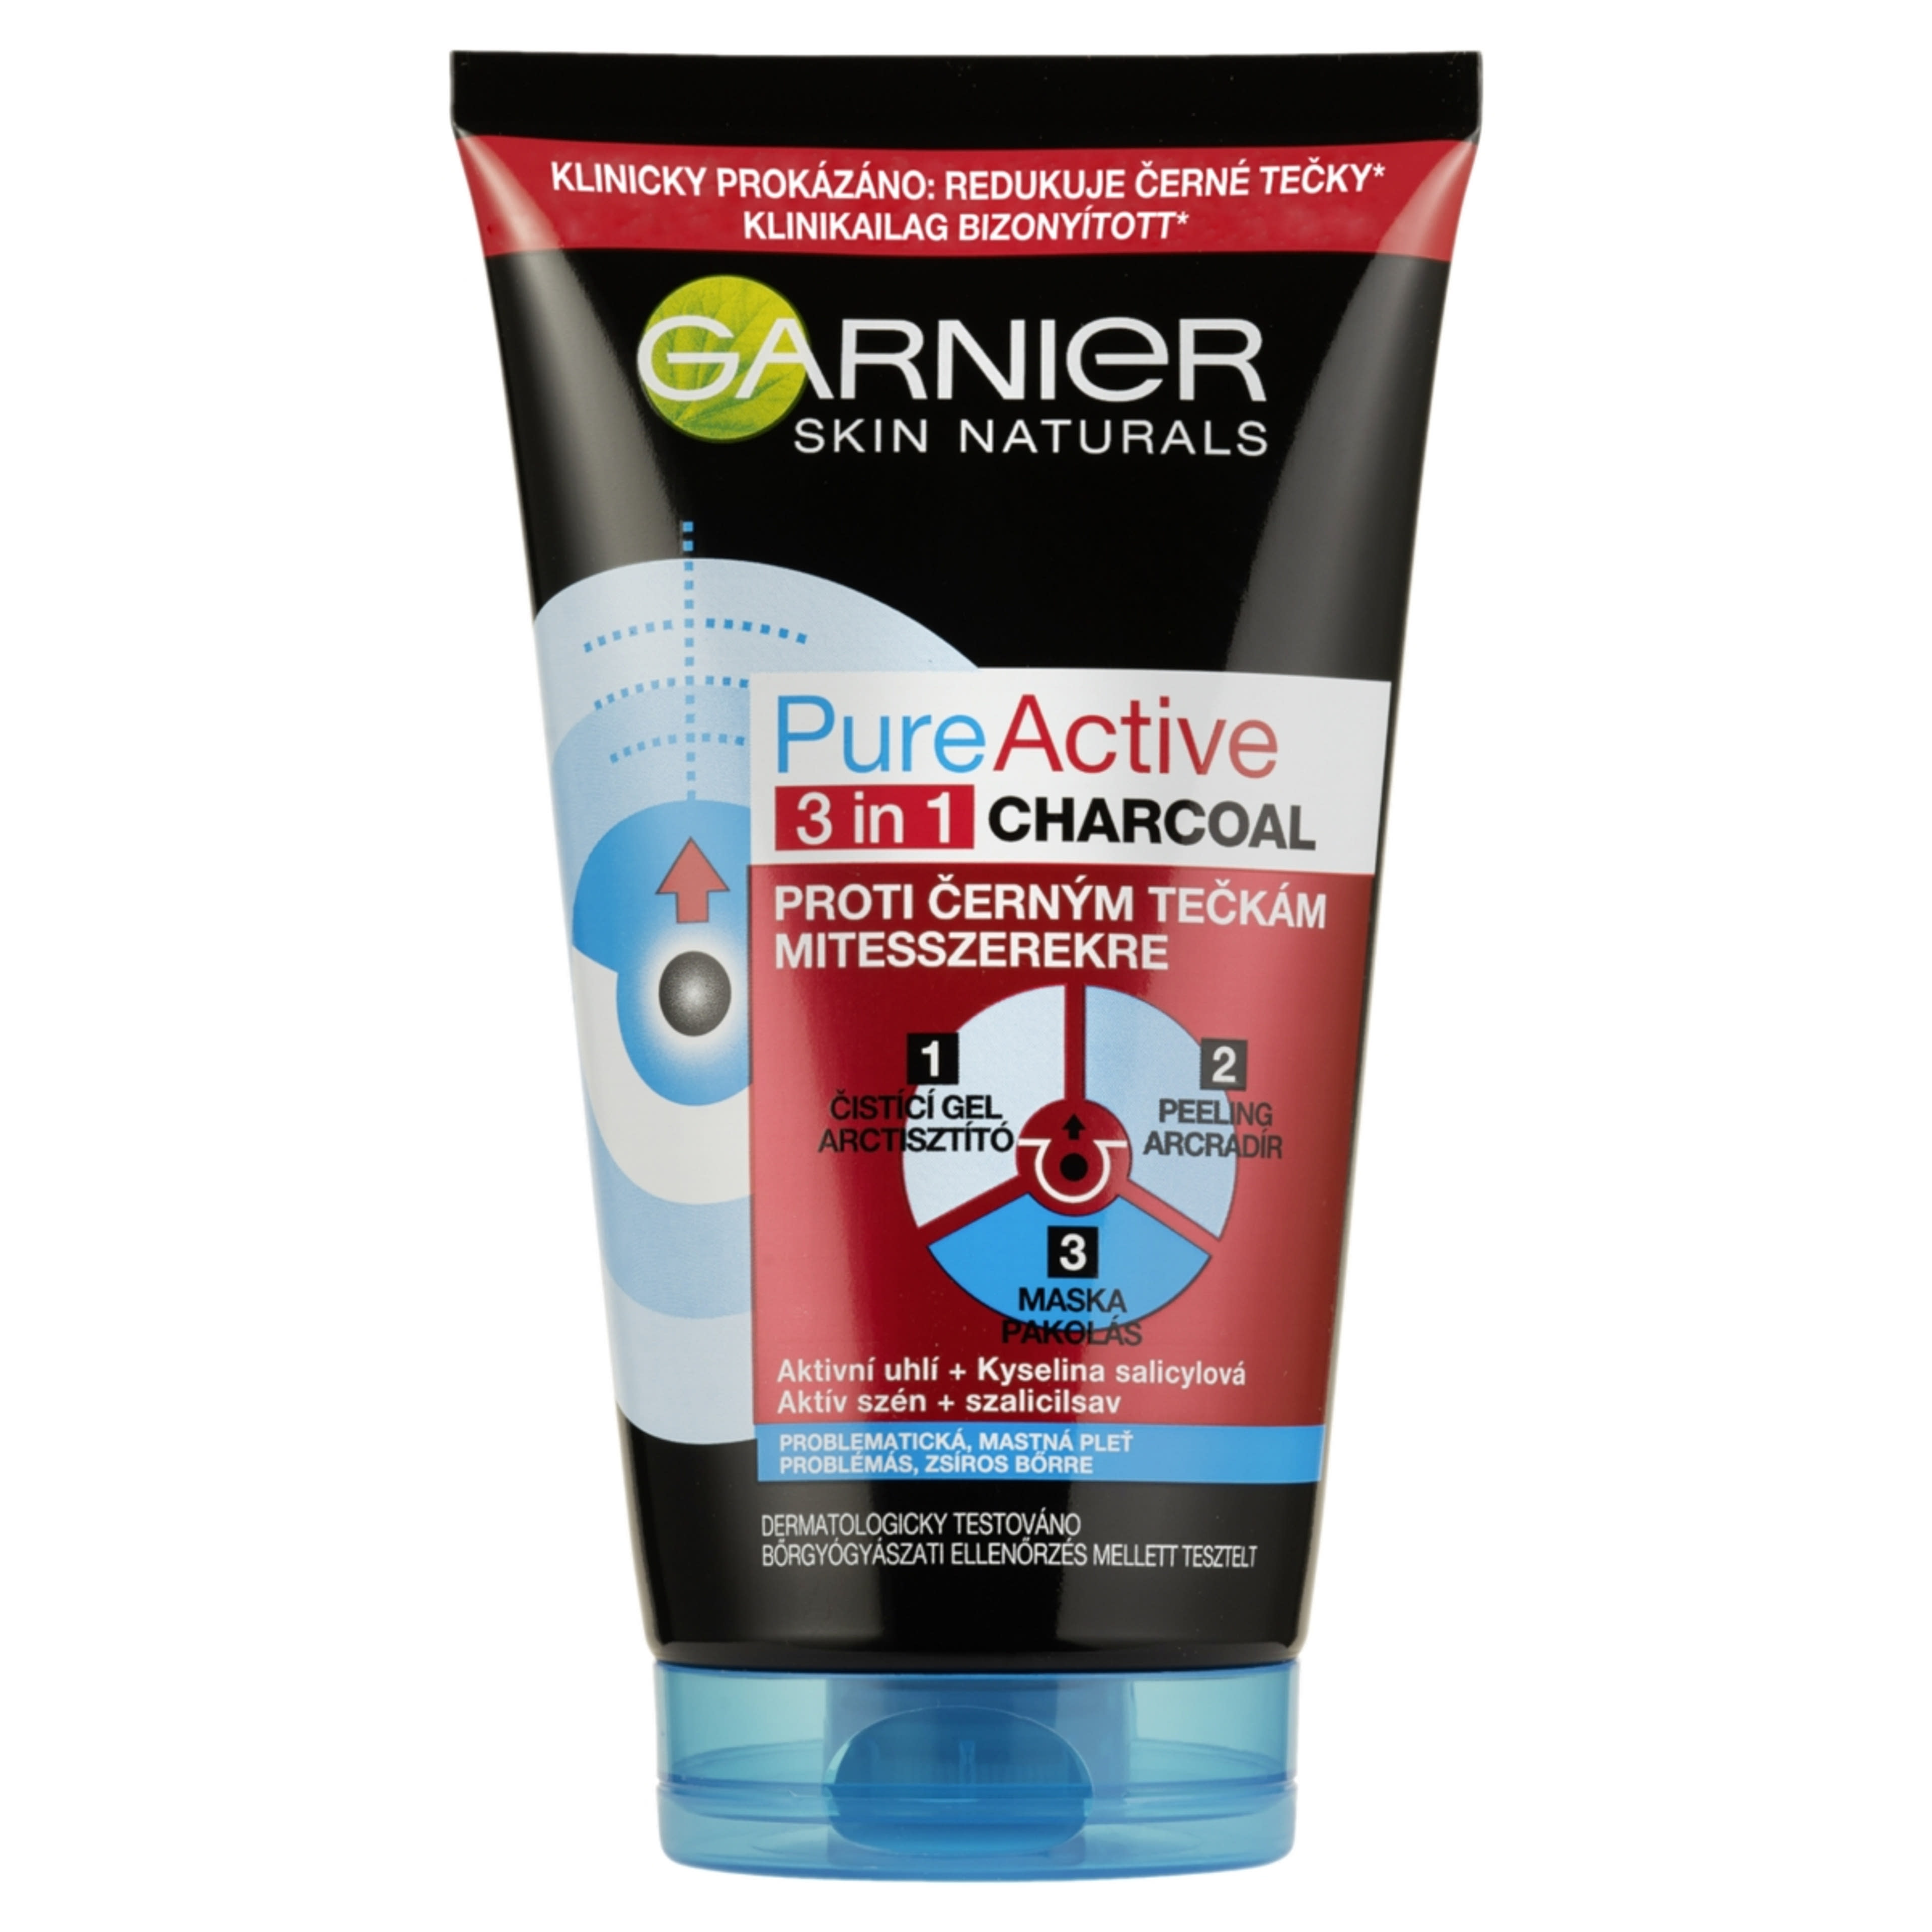 Garnier Skin Naturals Pure Active 3in1 Mitesszerek Ellen Arcmaszk Aktív Szénnel - 150 ml